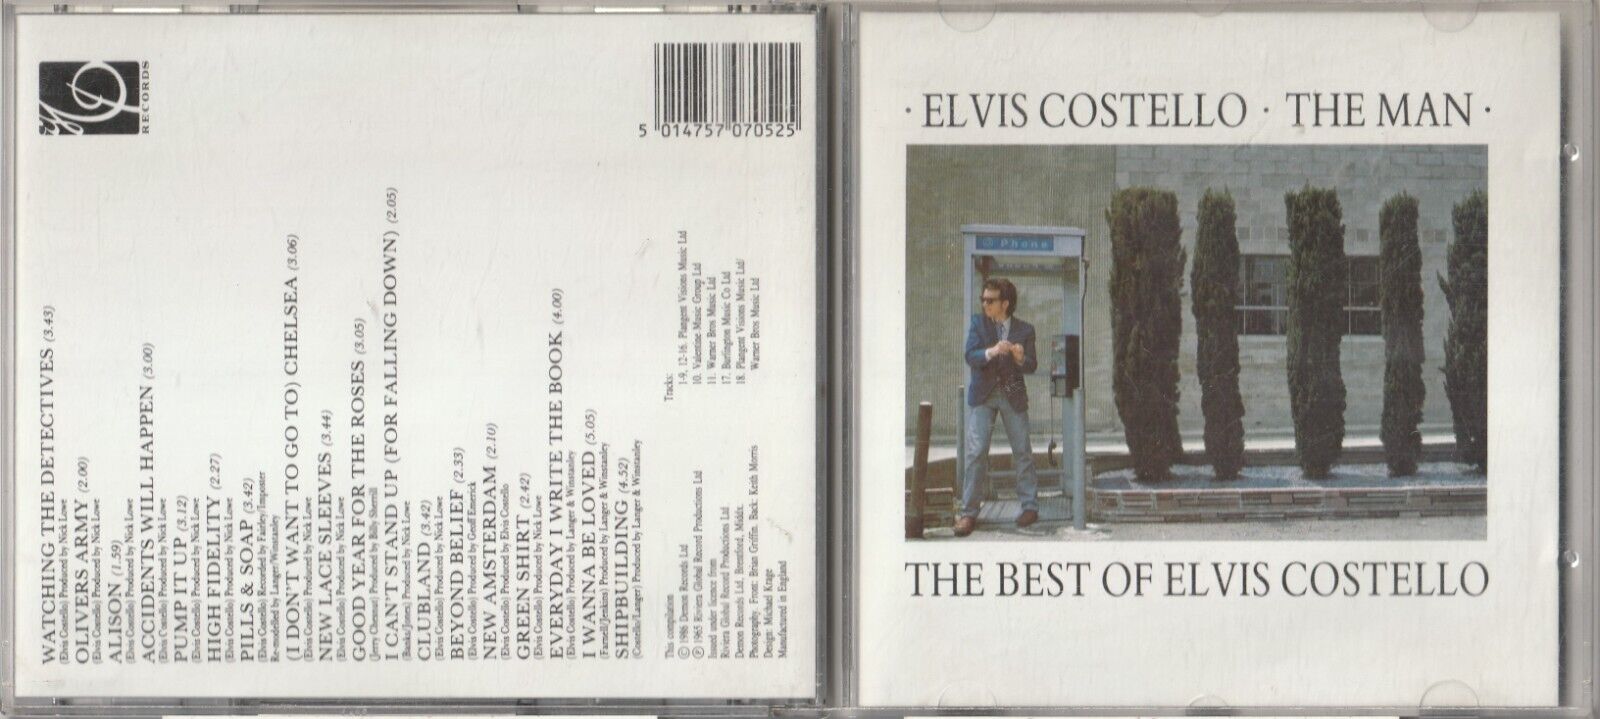 ELVIS COSTELLO / THE MAN (The Best Of) / CD ALBUM  (Imp, 1986)